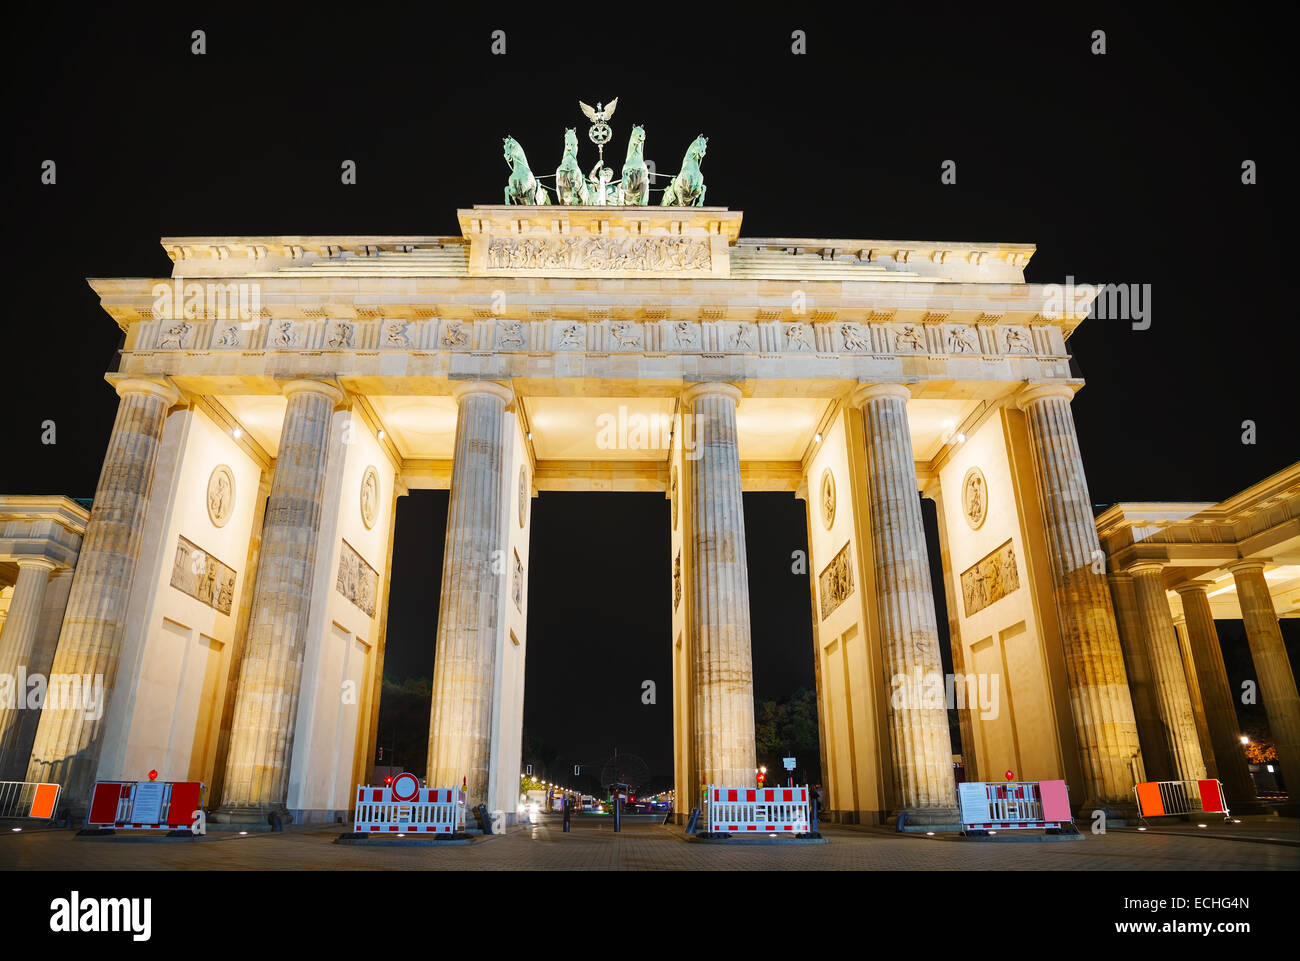 La puerta de Brandenburgo (Brandenburger Tor) en Berlín, Alemania durante la noche Foto de stock